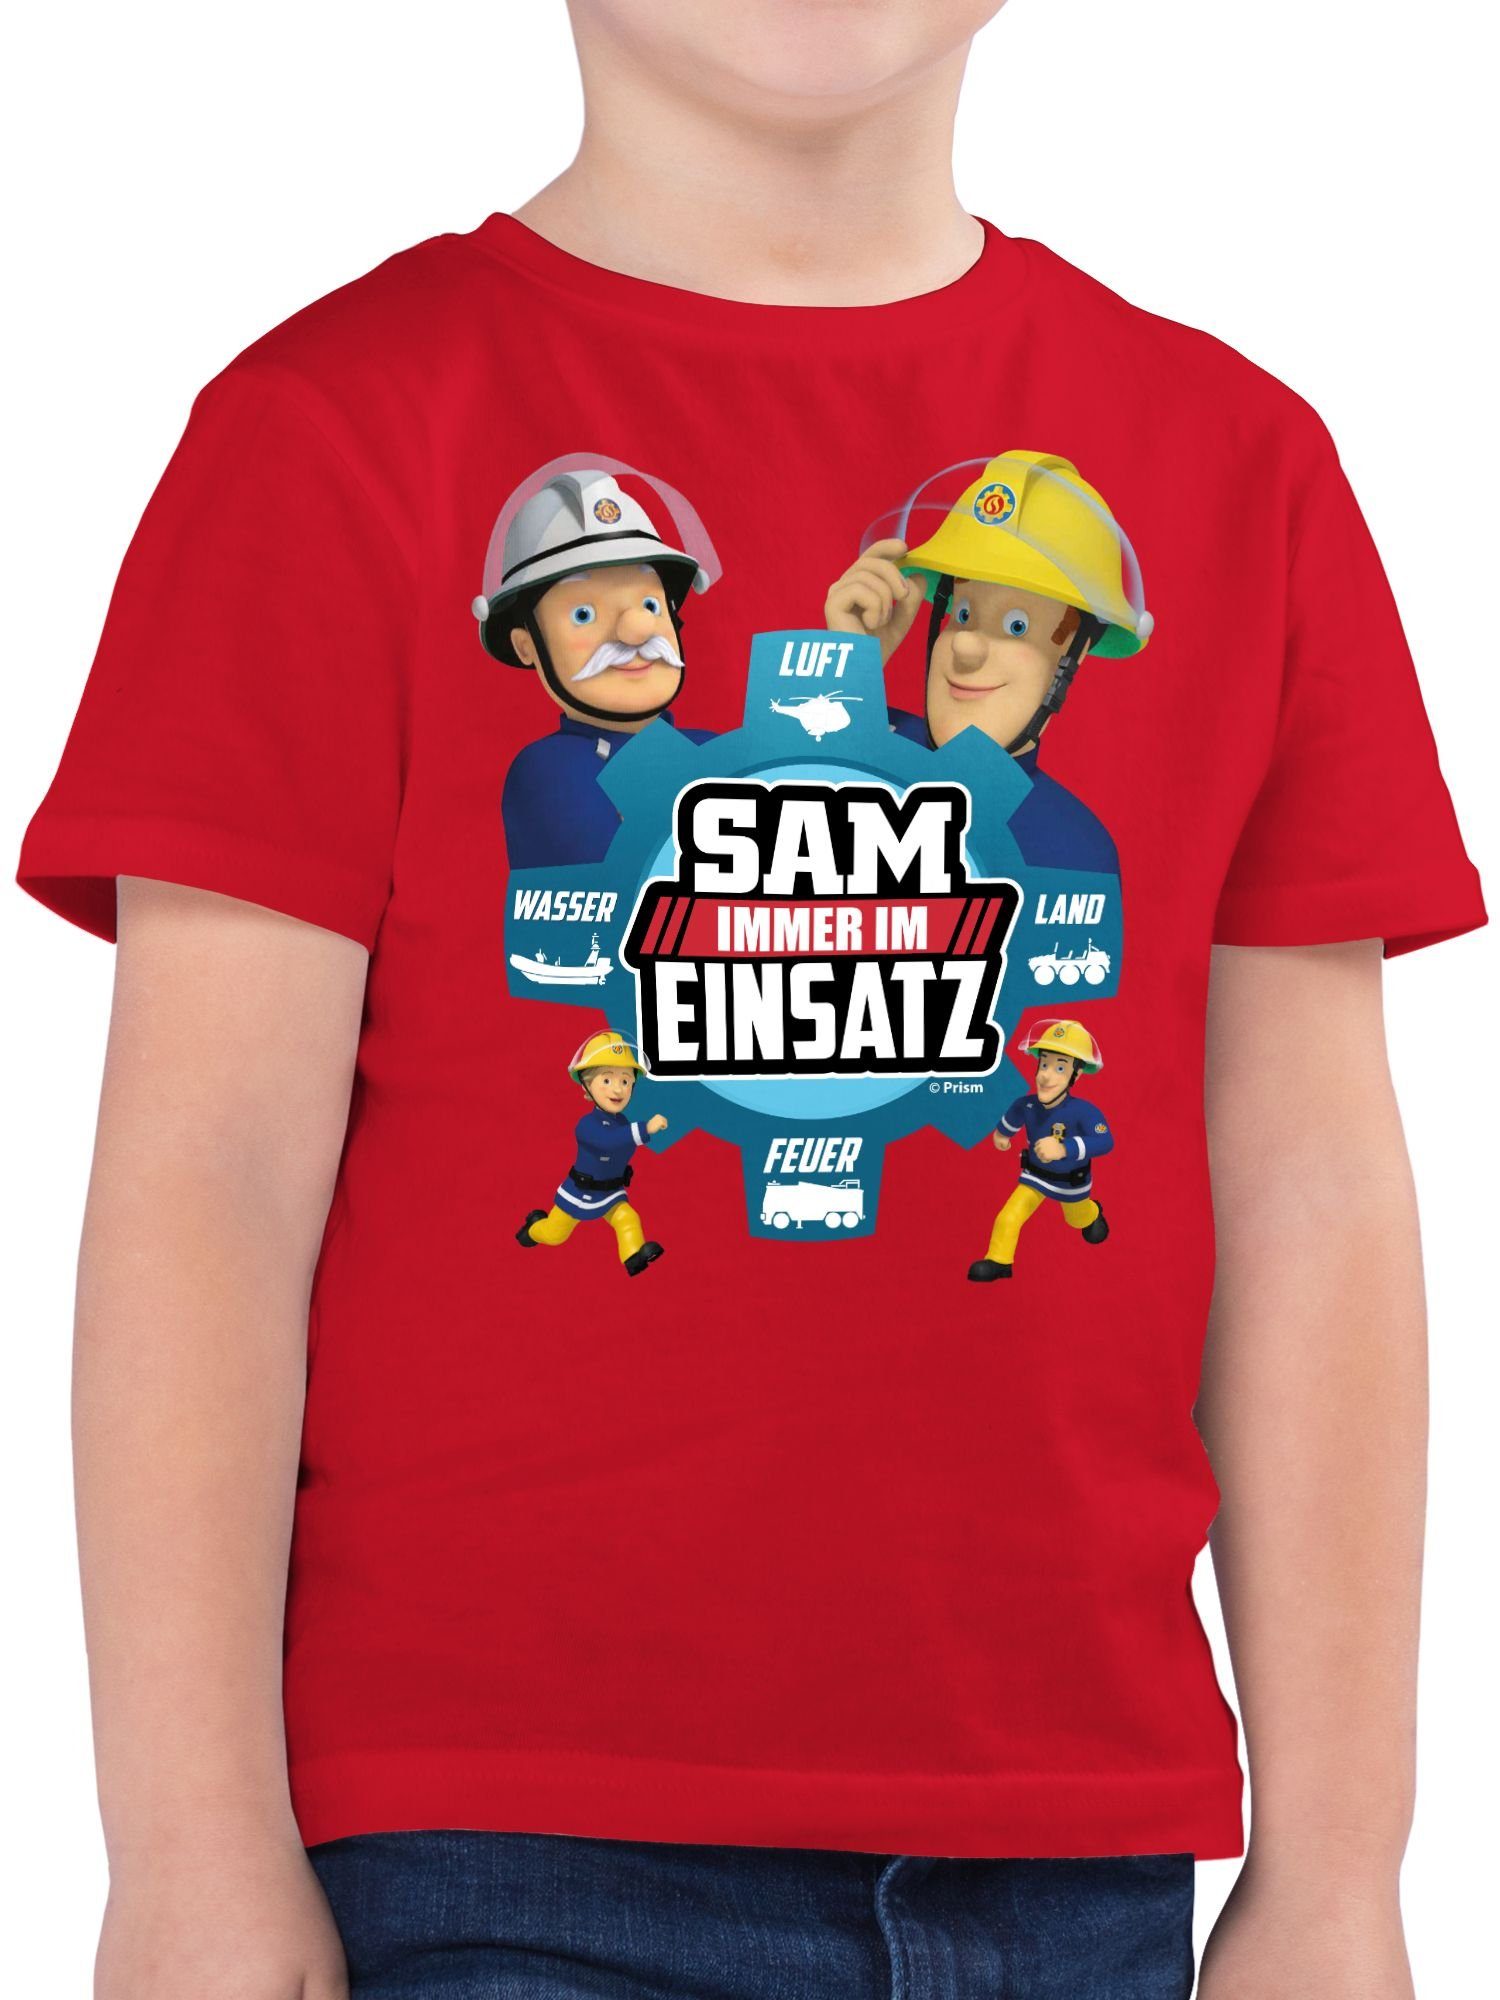 01 - Einsatz Sam Feuerwehrmann Jungen im Rot Shirtracer Sam T-Shirt Immer